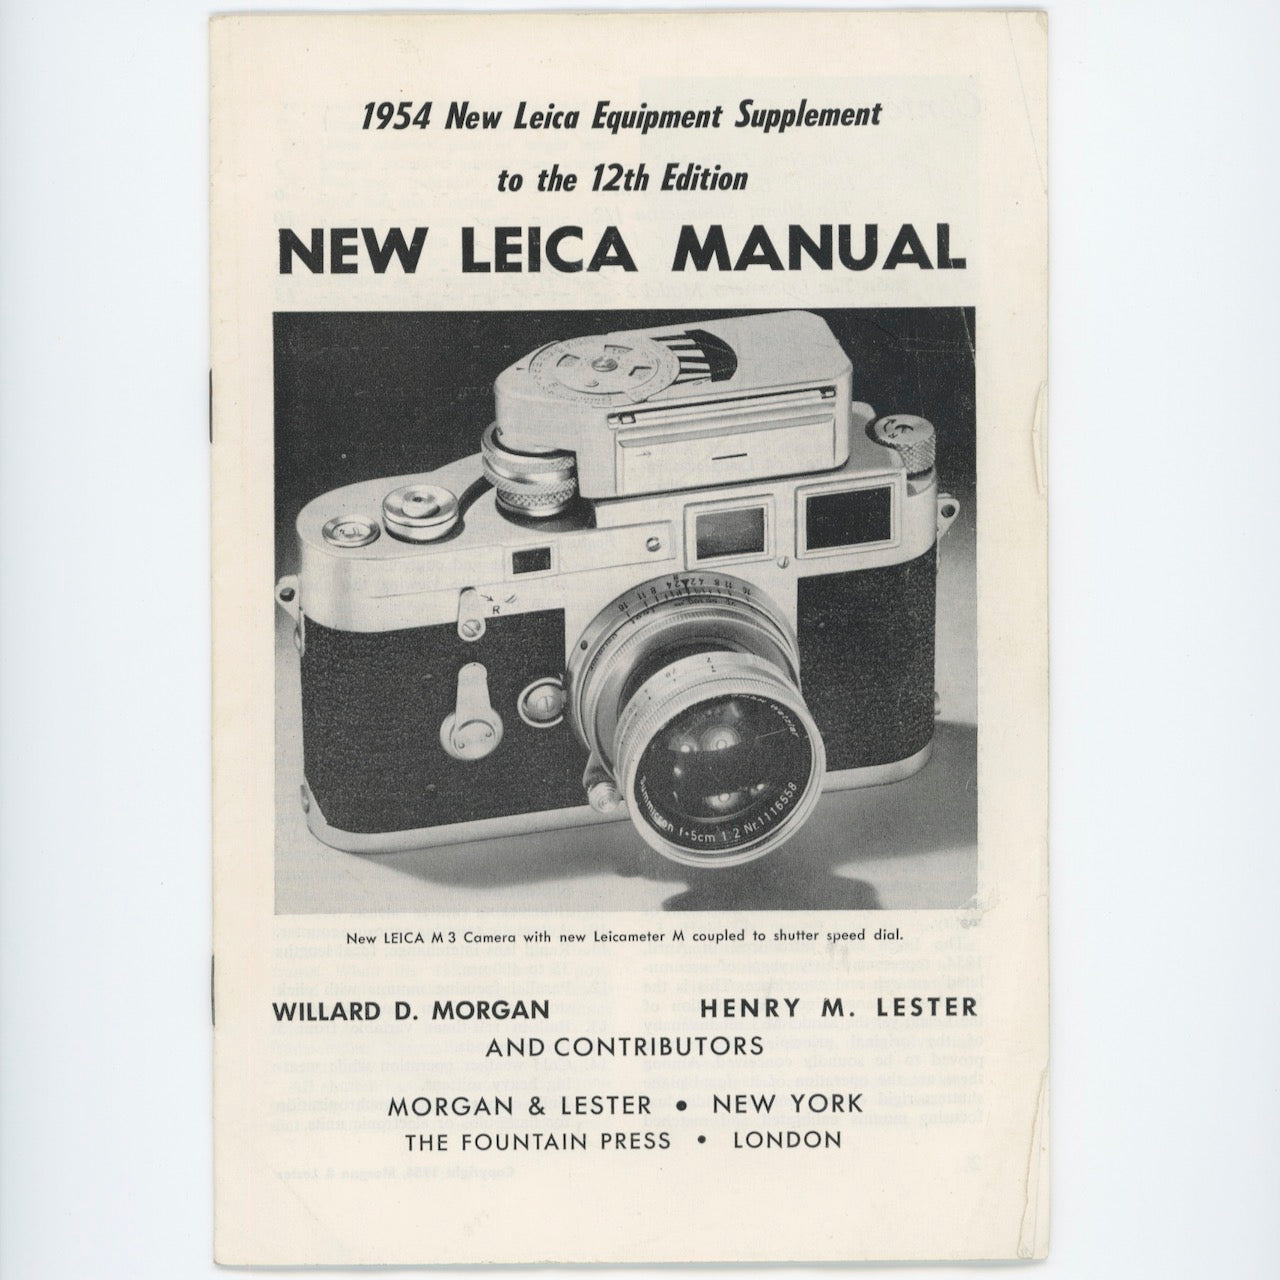 1954 New Leica Equipment Supplement